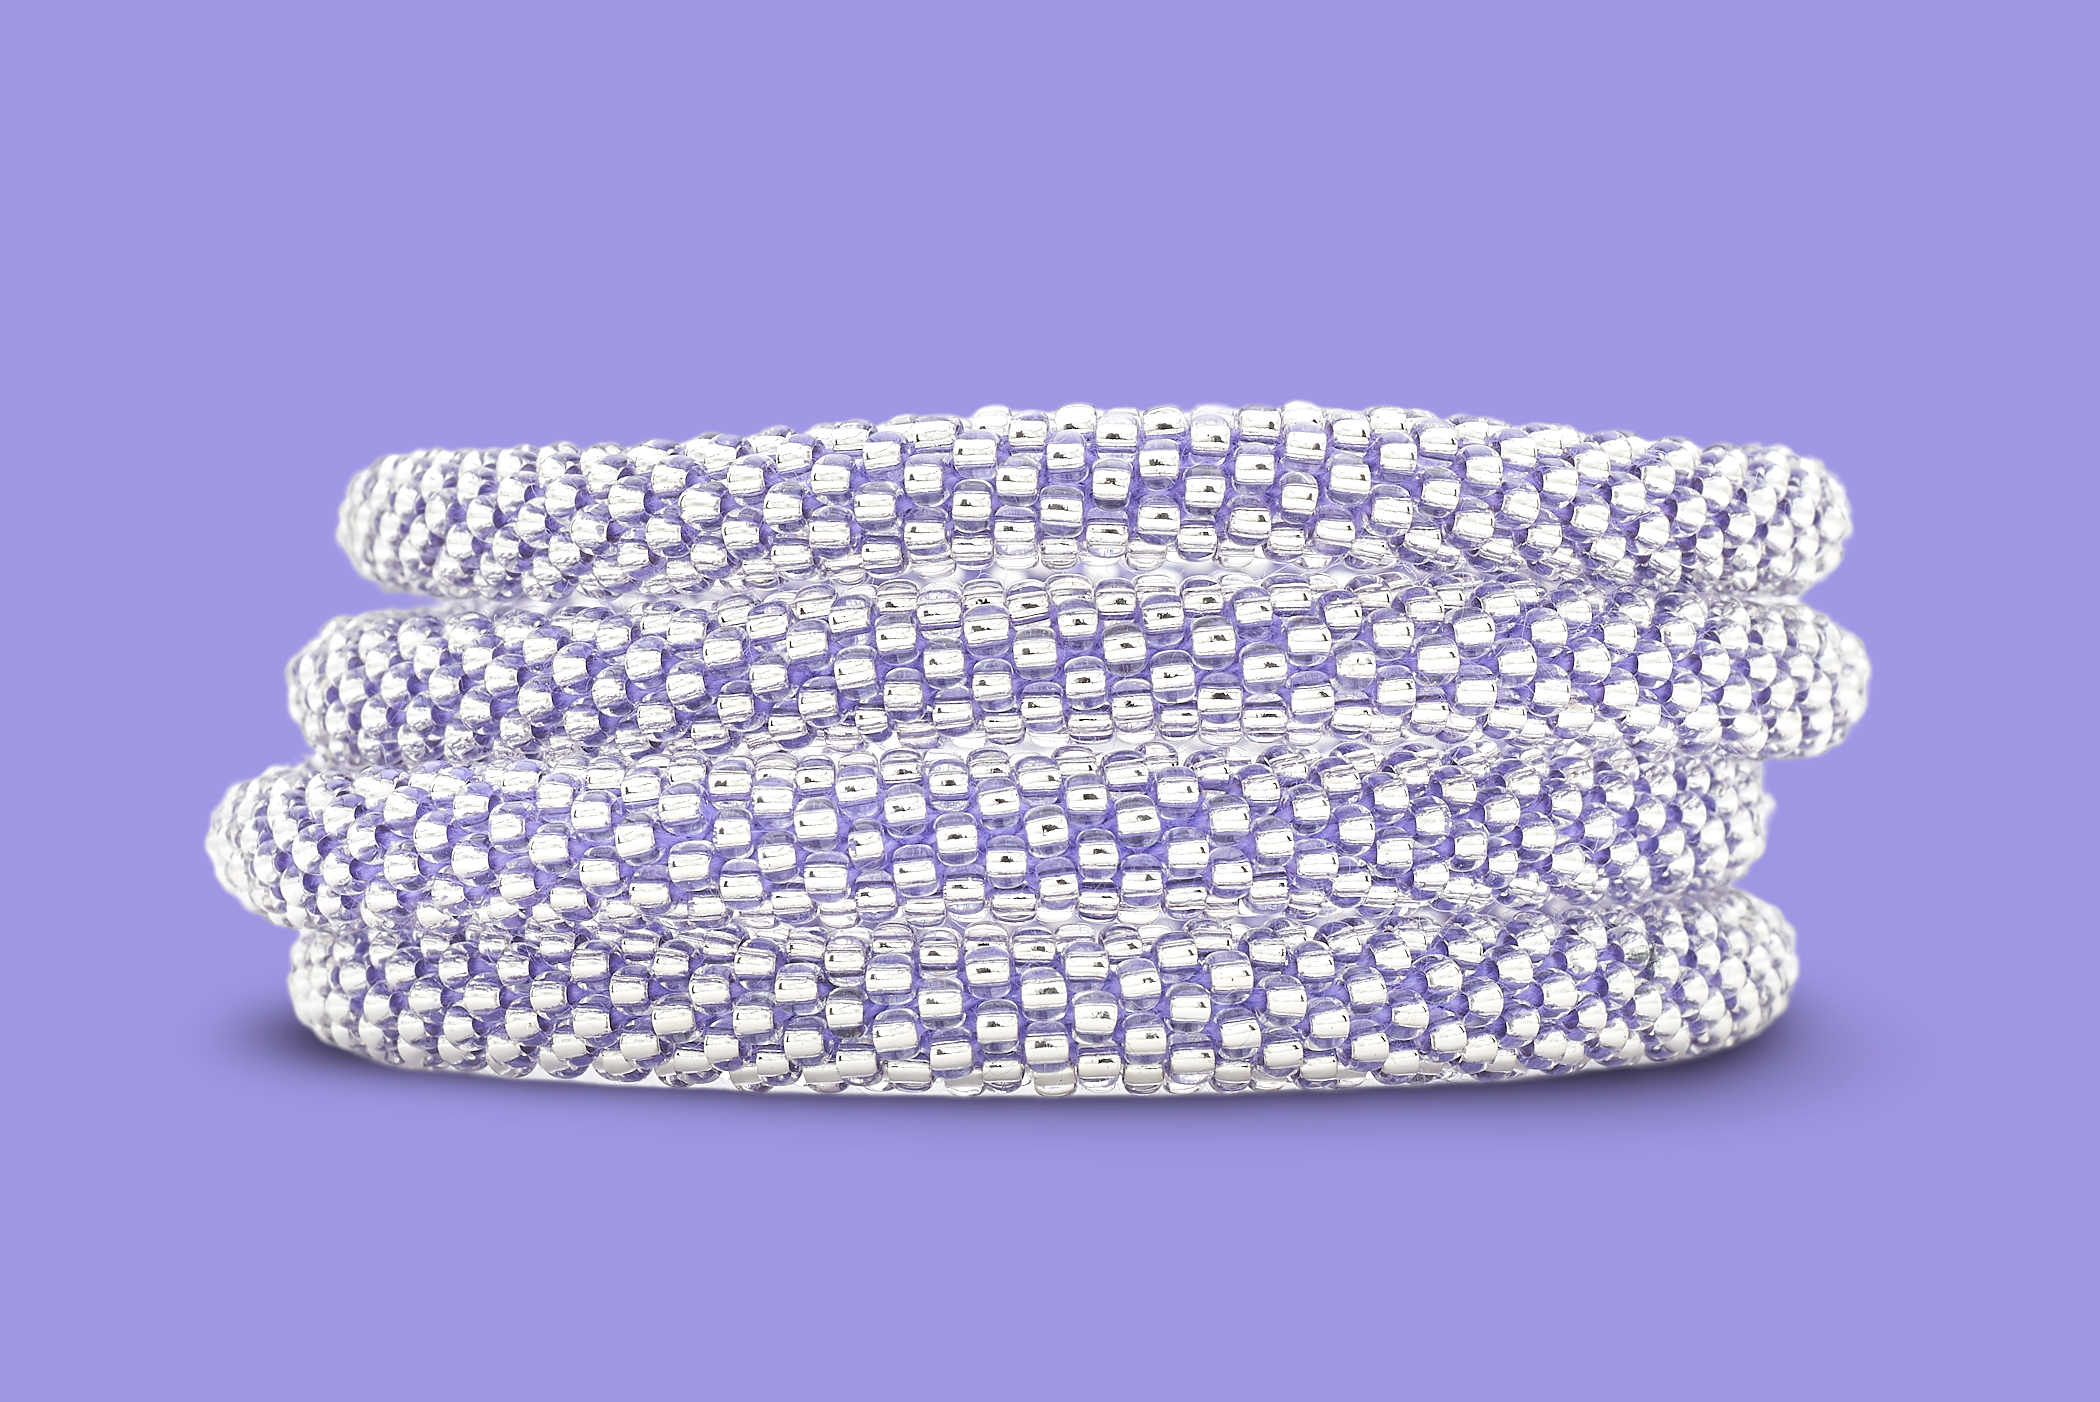 Sashka Co. Solid Clear Bead with Purple Thread Purple Diamond Sparkle Bracelet